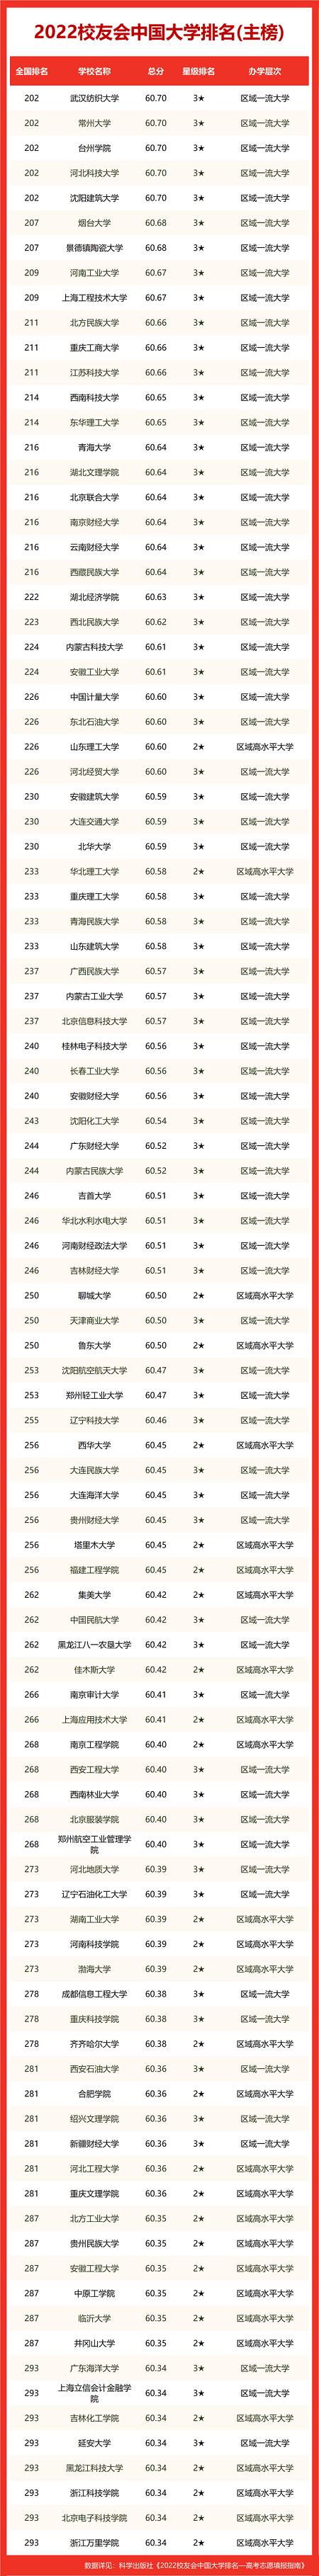 中国最顶尖的十所大学 2023最厉害的大学排名